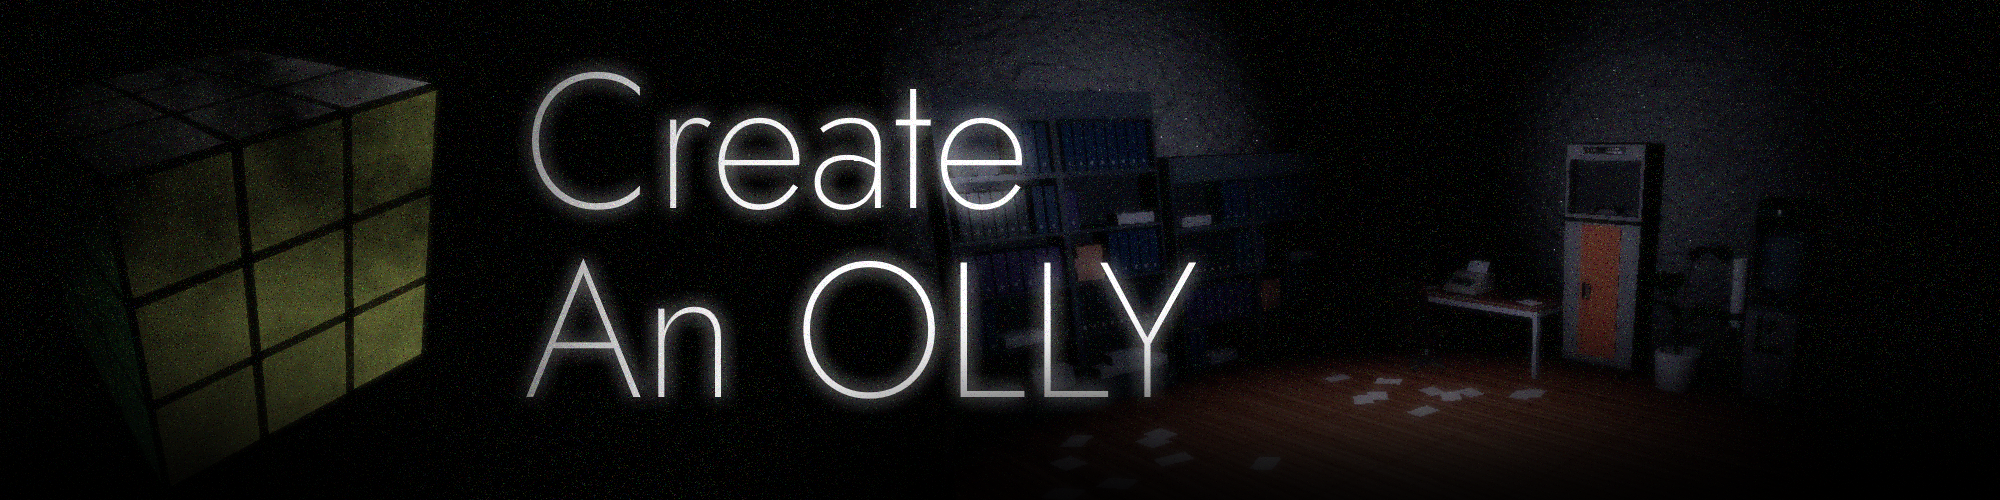 Create an Olly